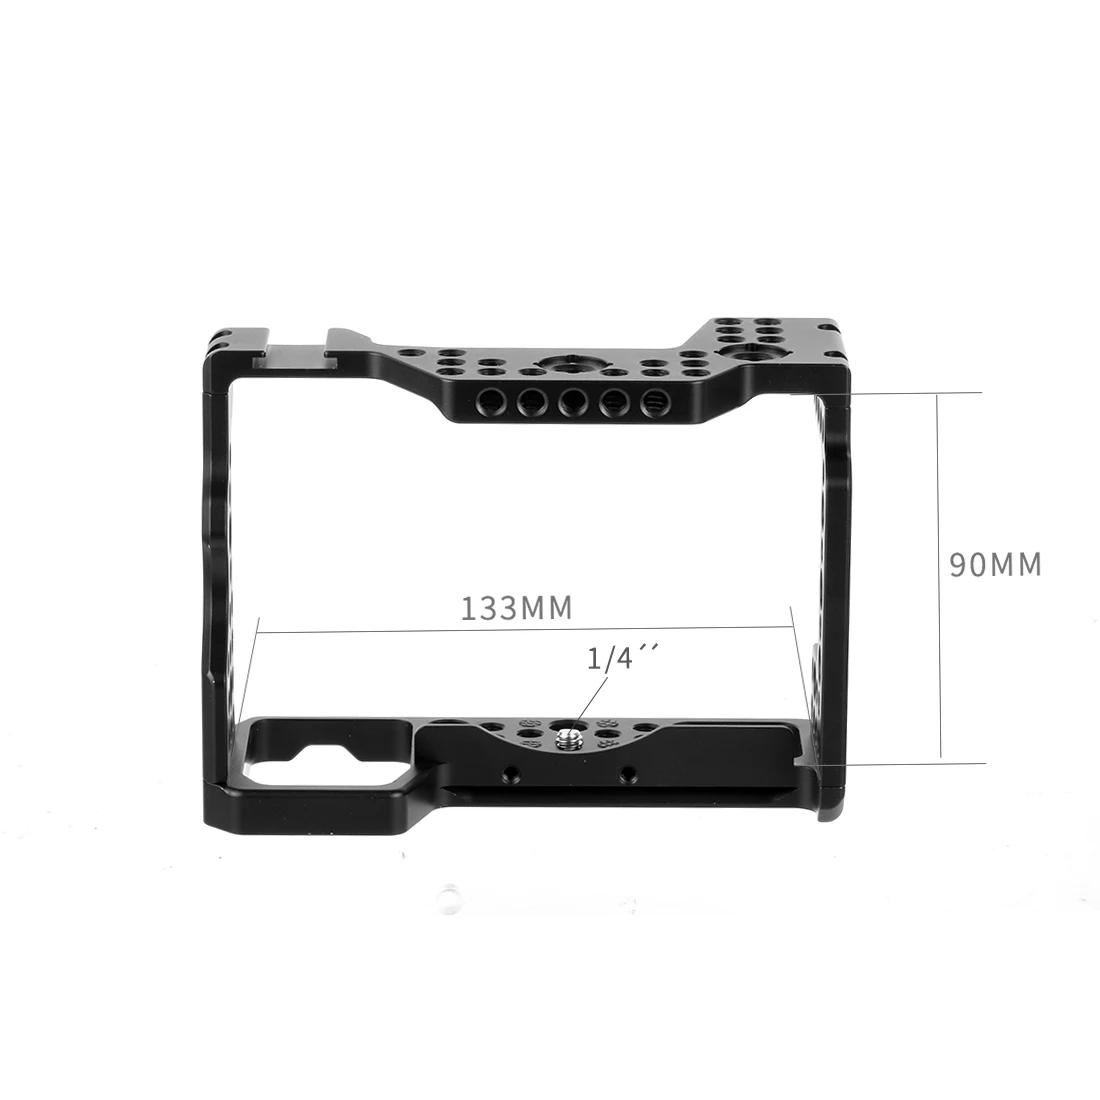 Быстроразъемное алюминиевое портативное Крепление-сетка для камеры штатив кронштейн для фотографии расширение для sony A7RIII/A7III/A7MIII SLR DSLR